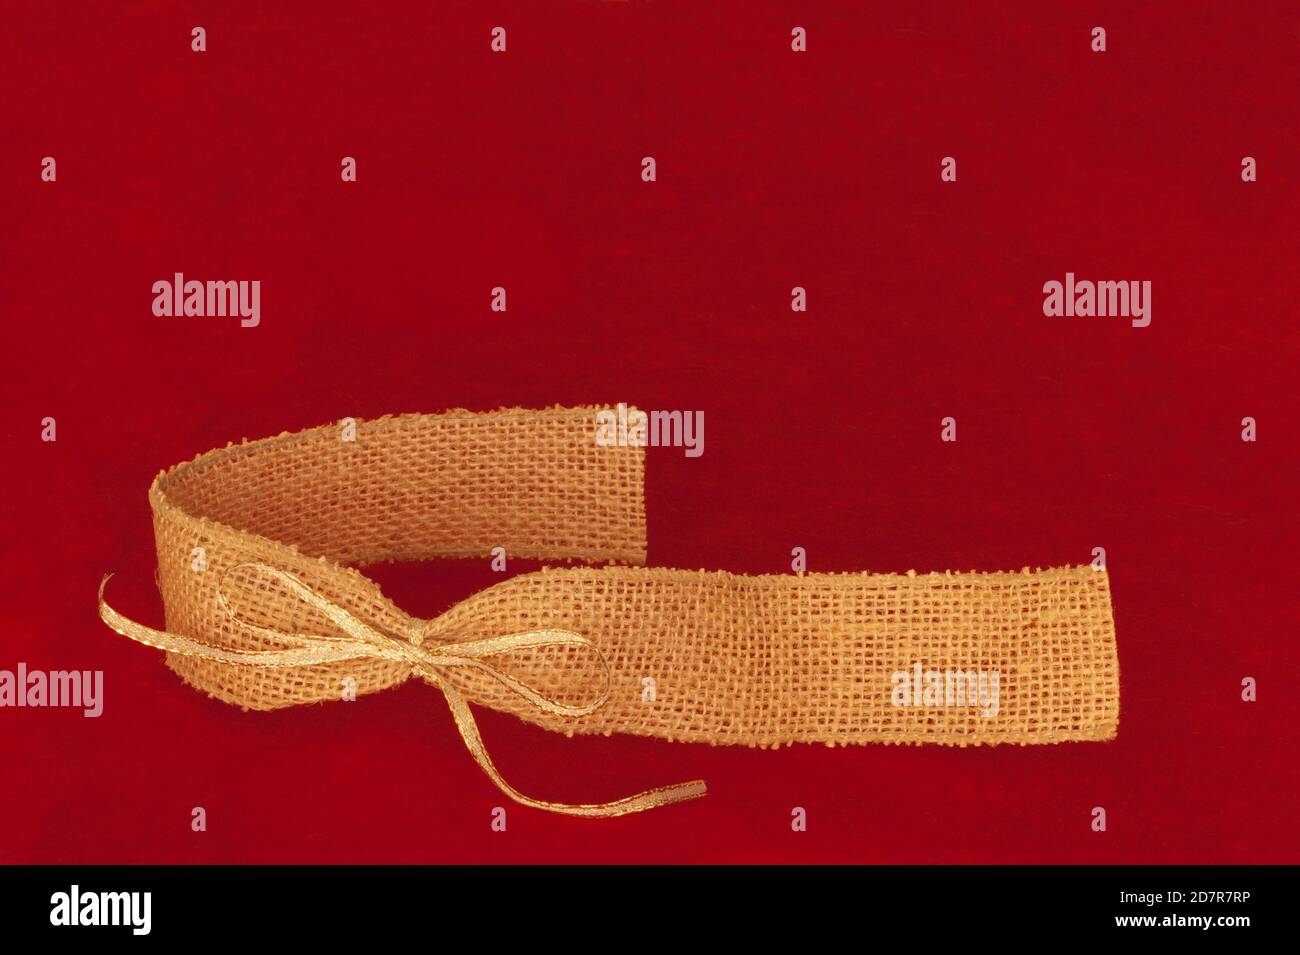 Espace de texte au-dessus du ruban de toile de jute beige doré sur fond de tissu rouge. Banque D'Images